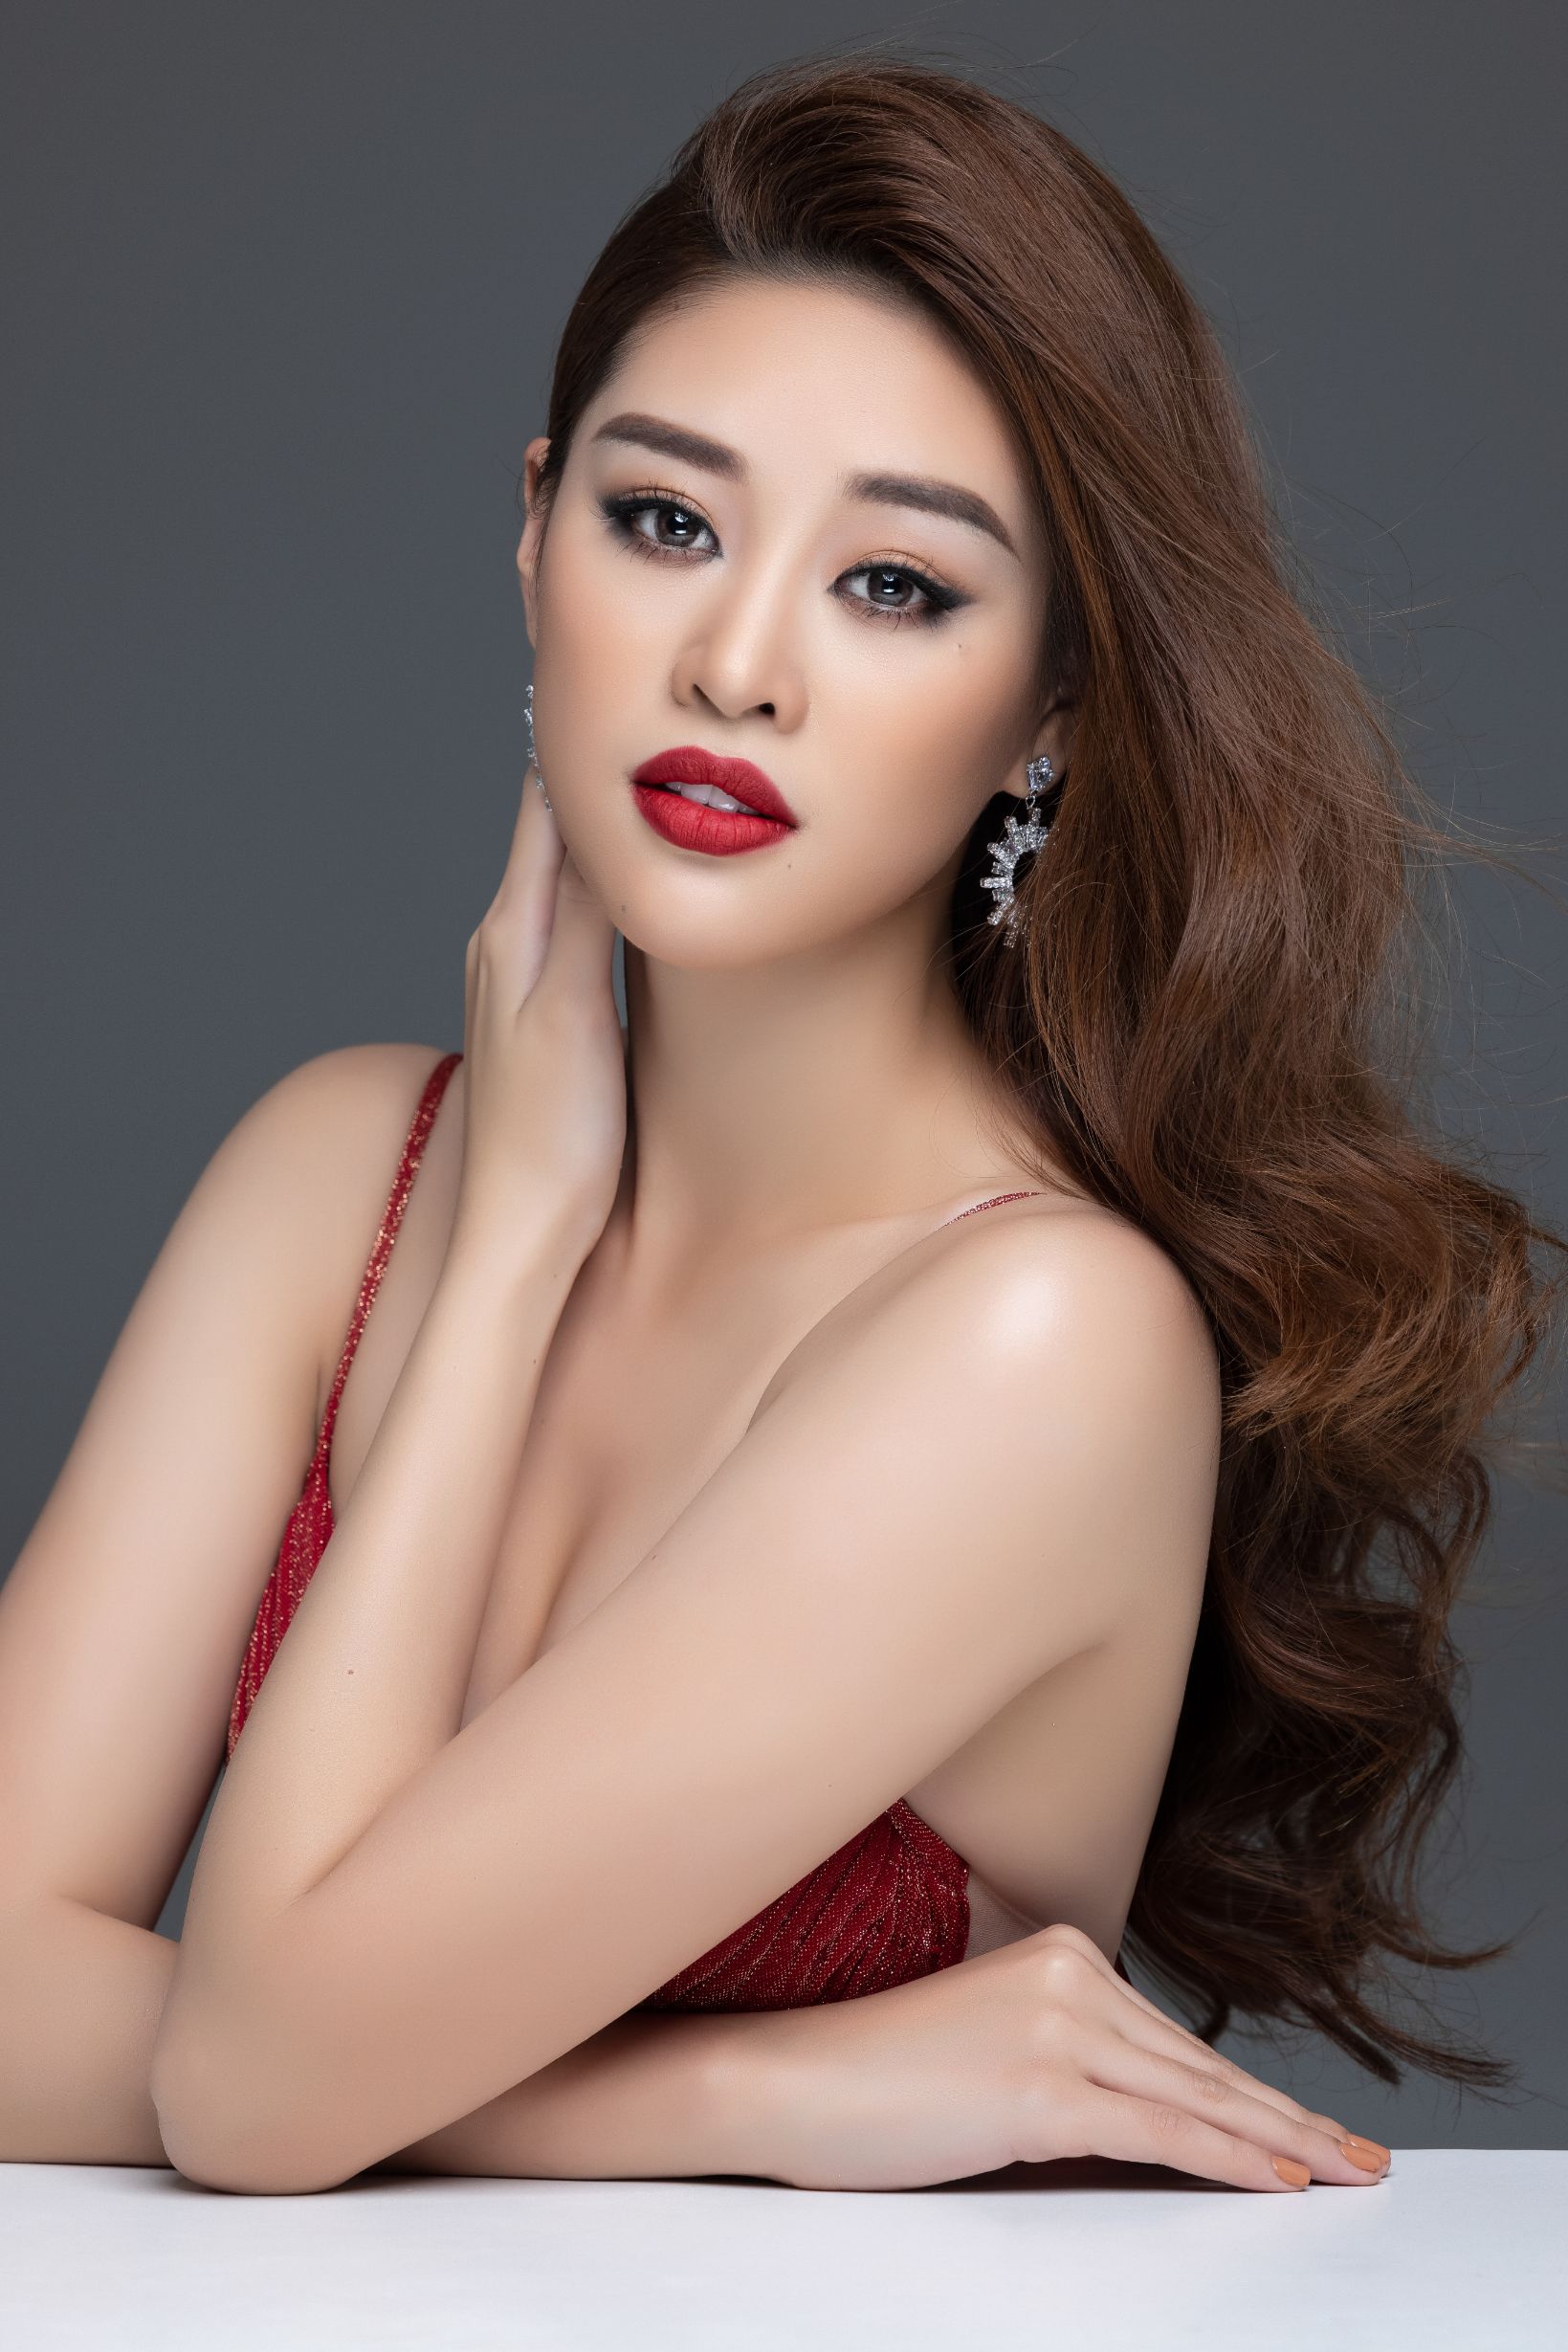 Hoa hau Khanh Van5 Khánh Vân kể chuyện vượt qua ám ảnh quấy rối tình dục trong video gửi đến Miss Universe